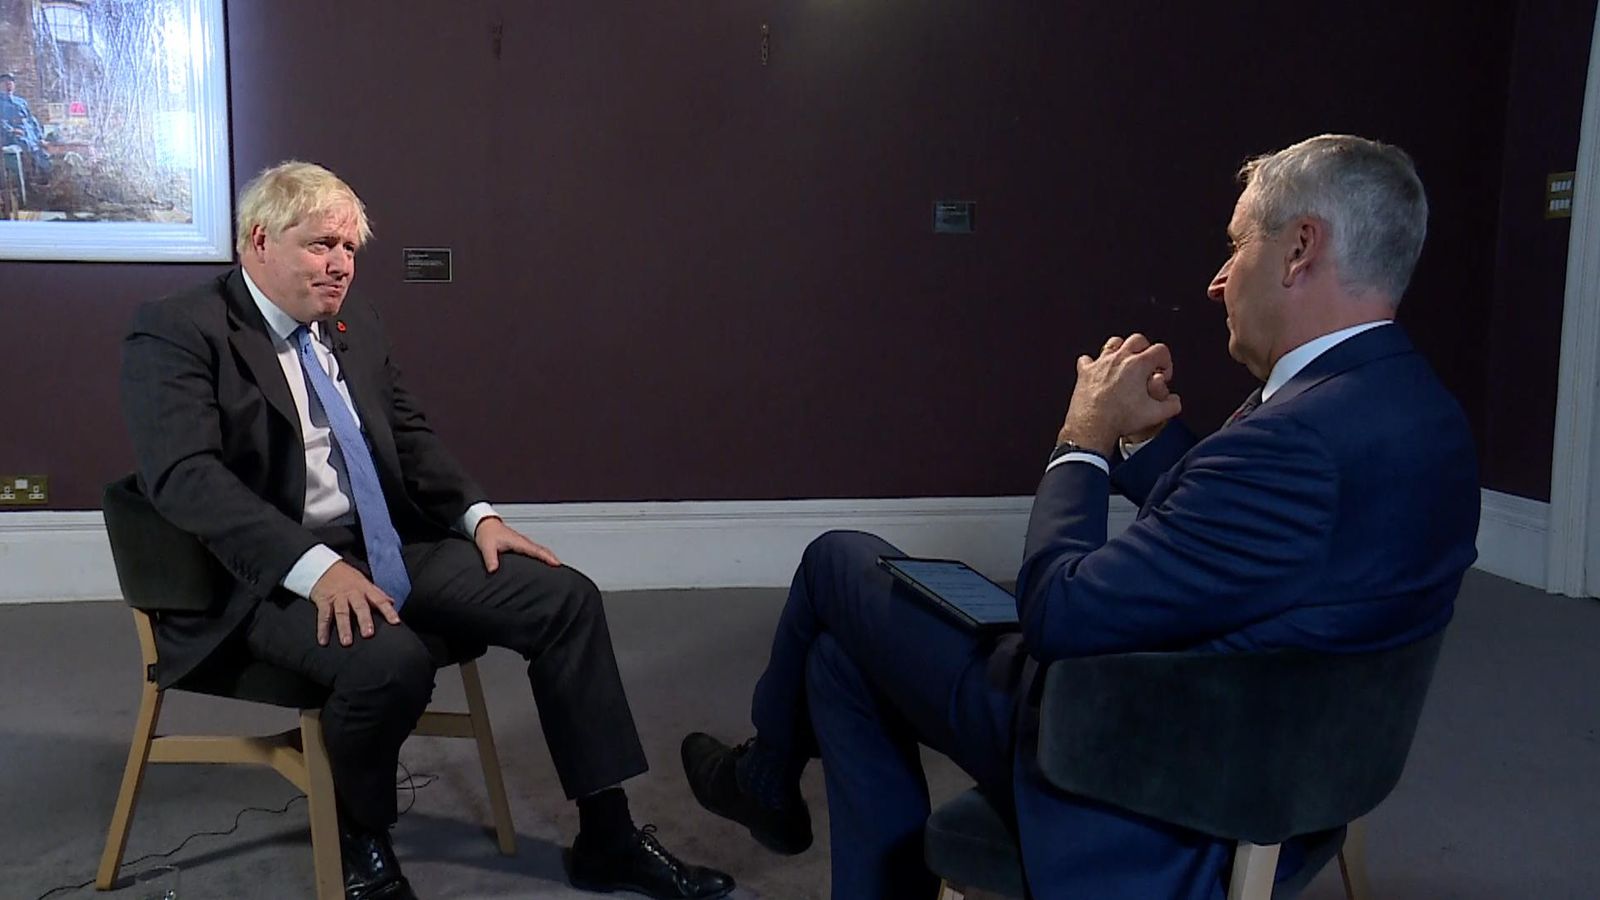 Boris Johnson interview in full - Ukraine, 'extraordinary America' and if he will return